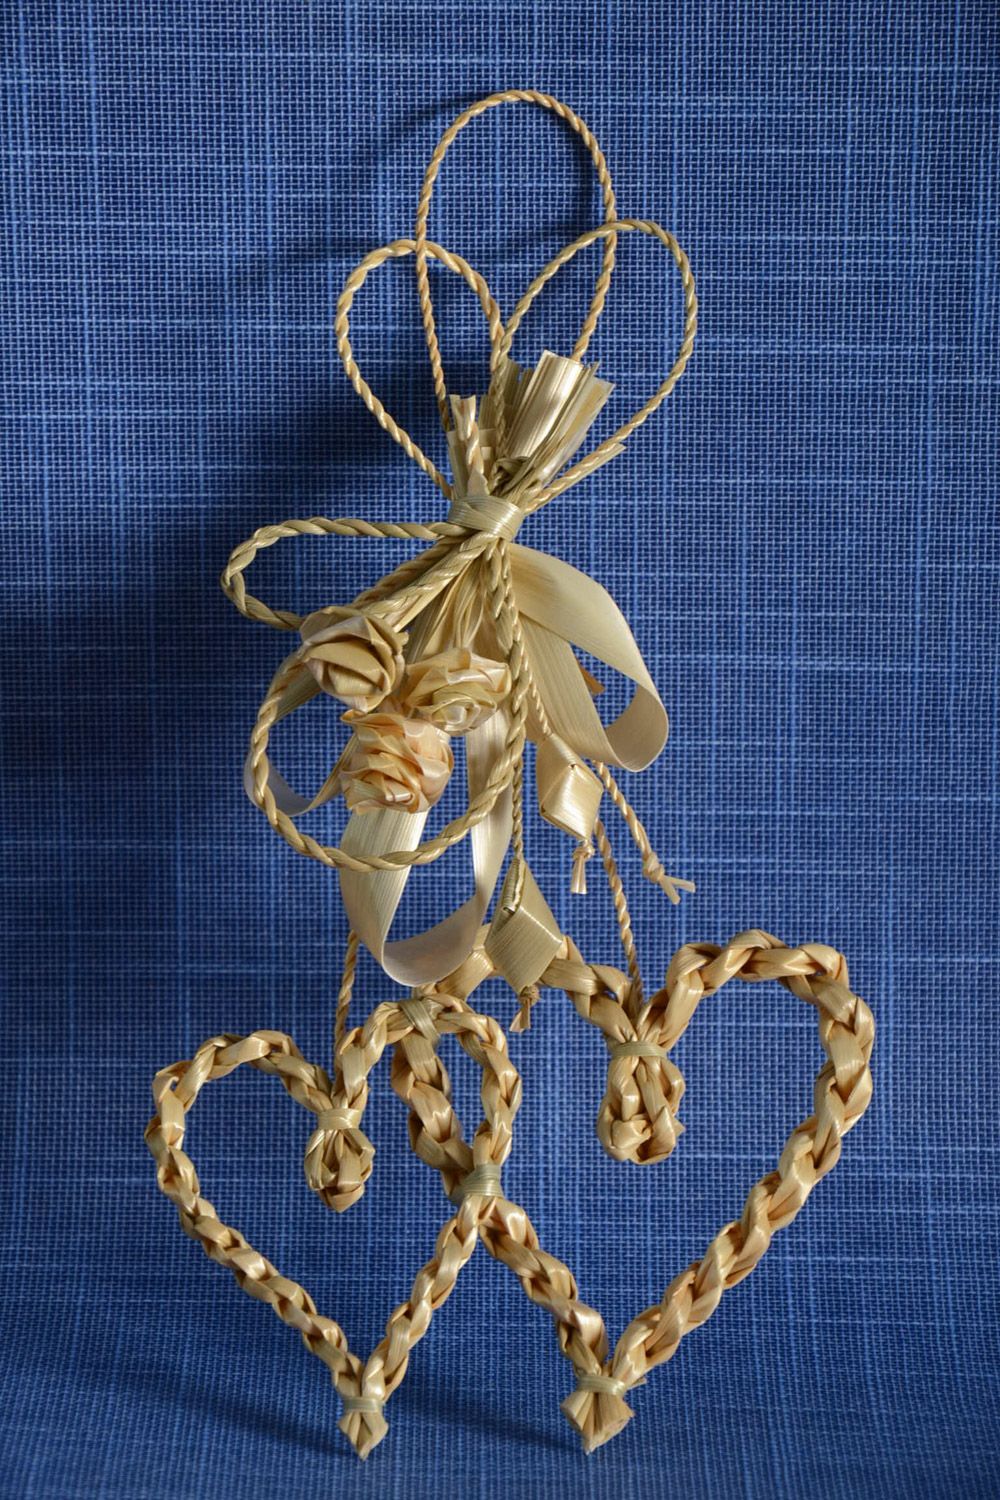 Интерьерная подвеска плетеная из соломы в виде двух сердец большая ручной работы фото 1